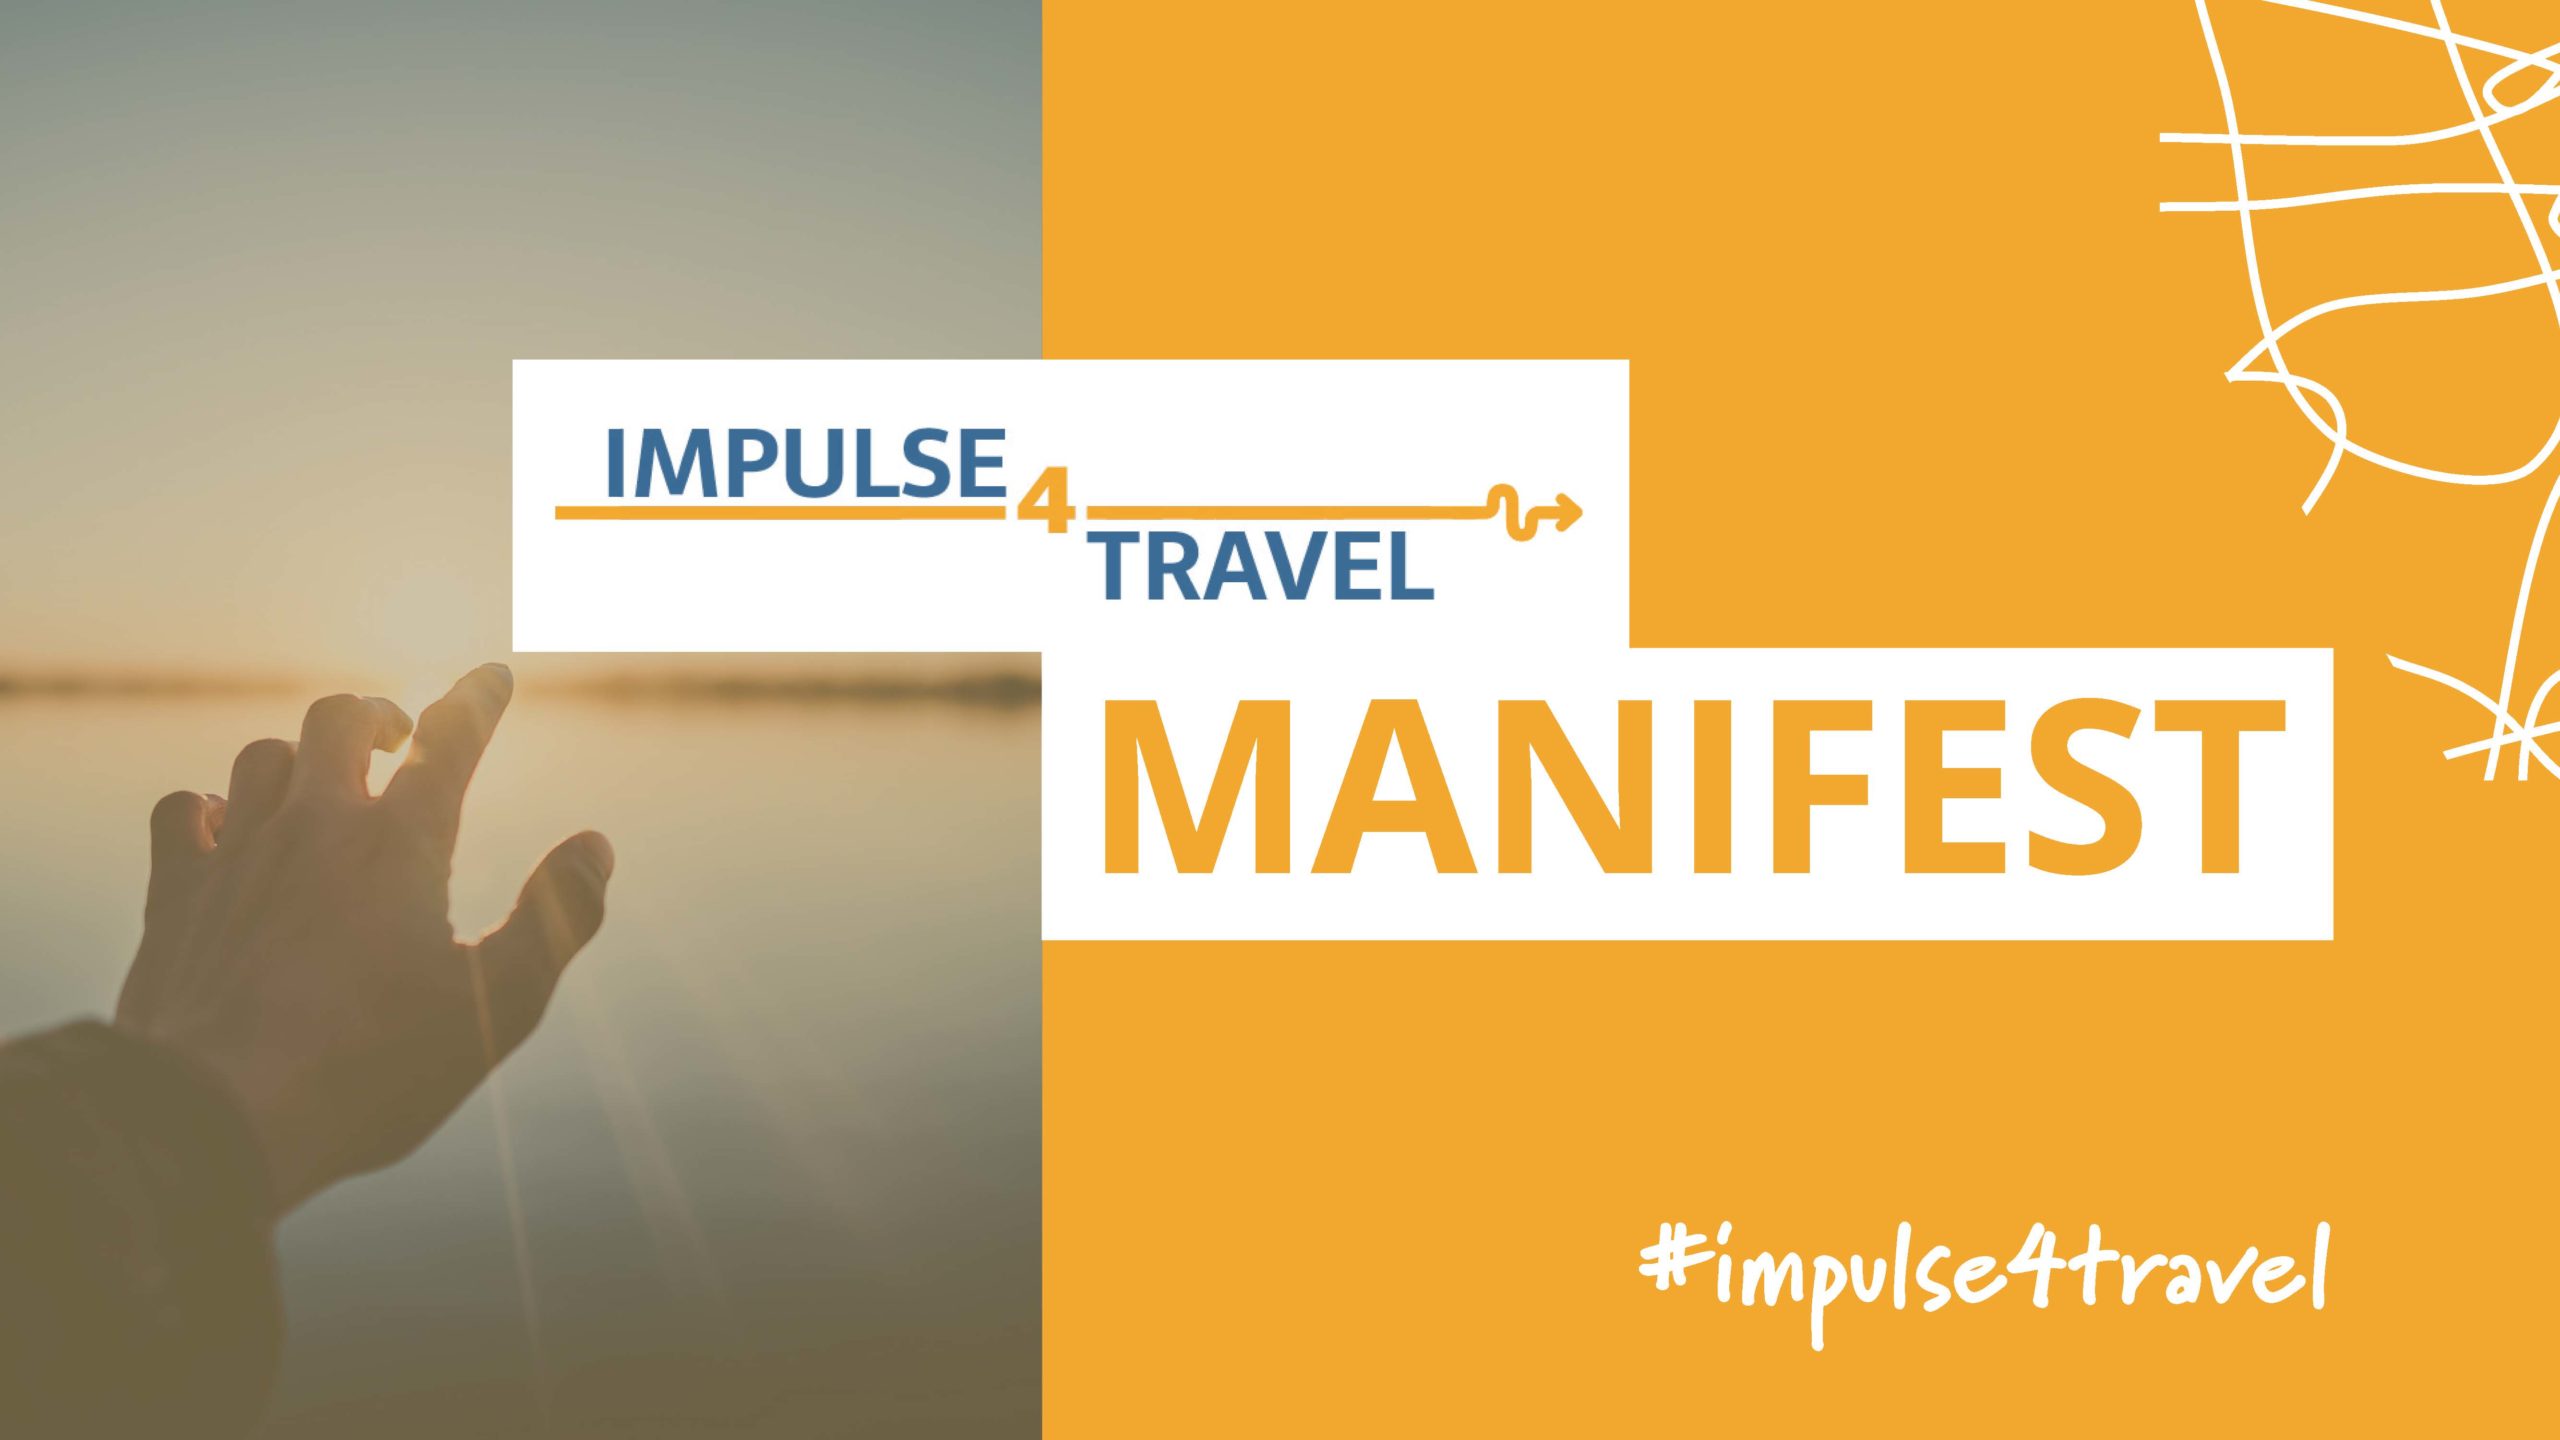 impulse4travel_Manifest-scaled